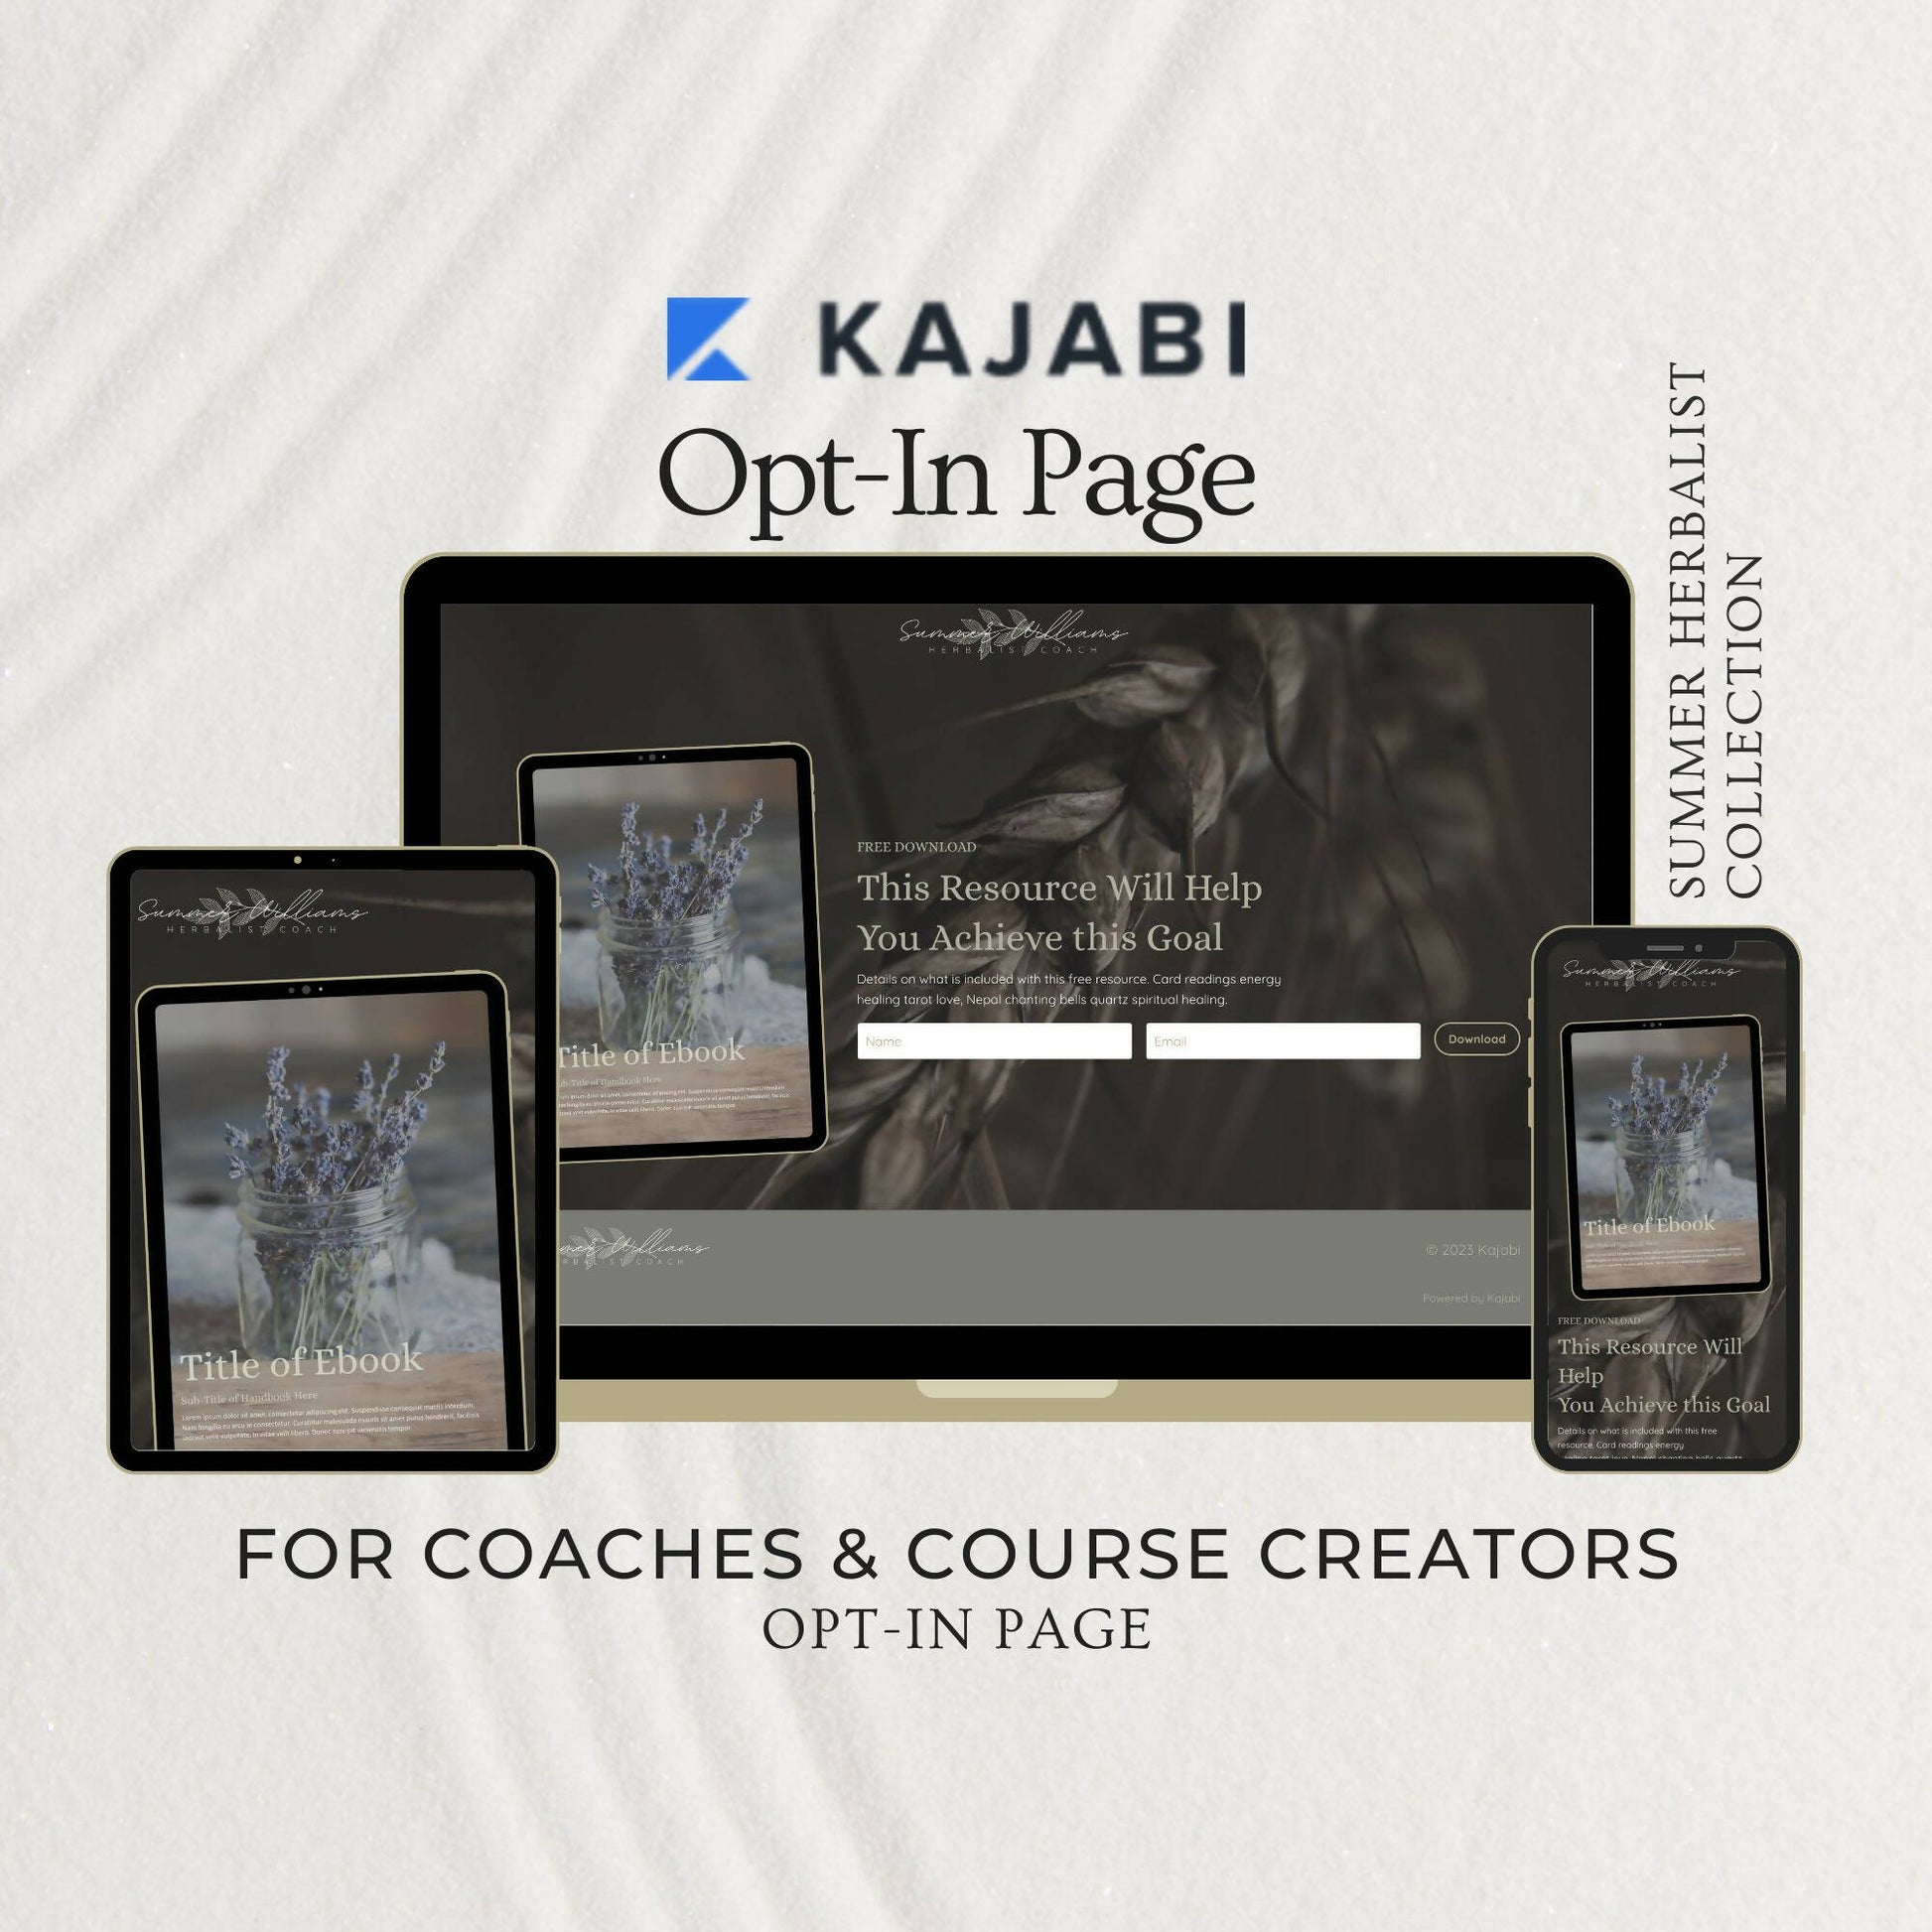 kajabi-opt-in-template-coach-course-creator01